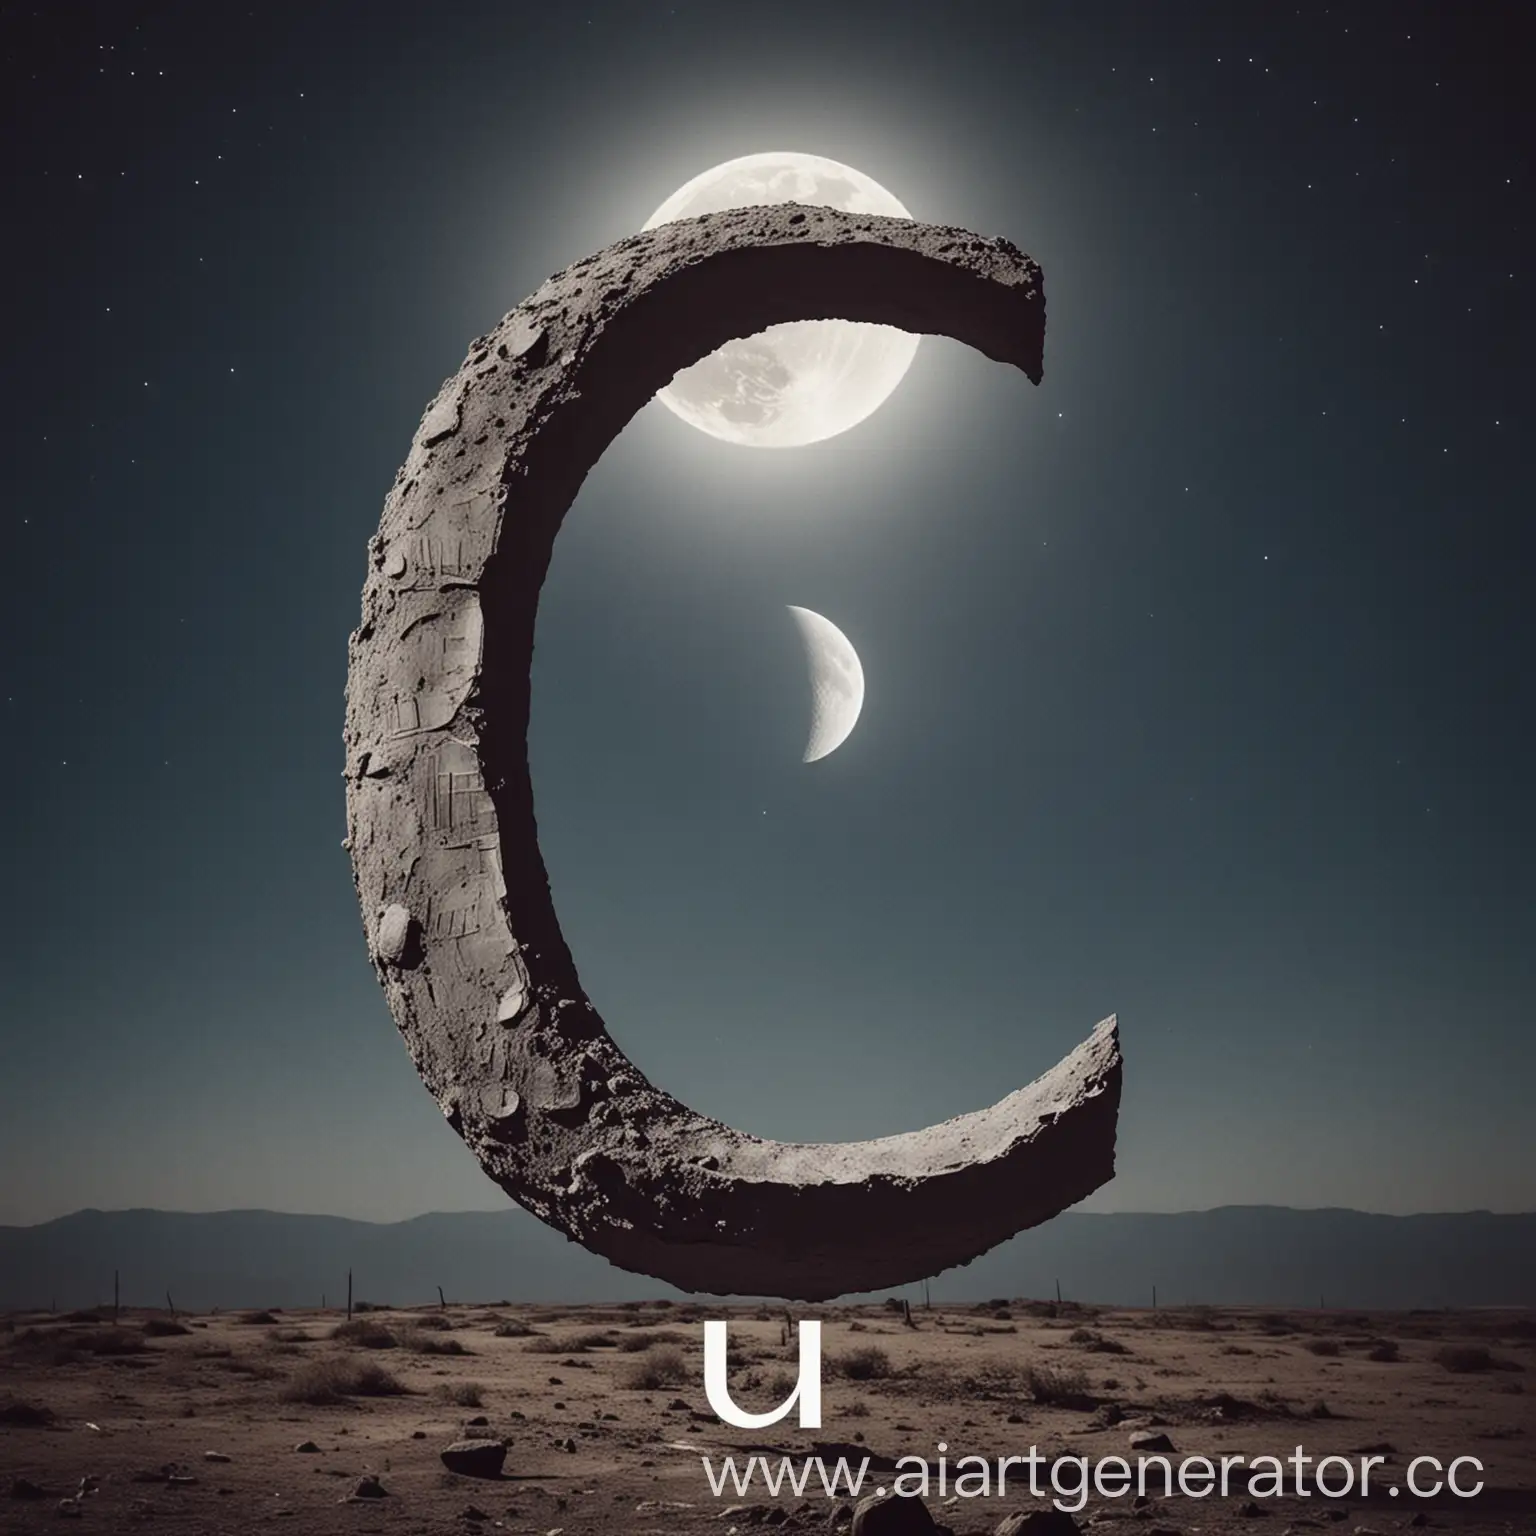  картинку с луной и большой буквой U